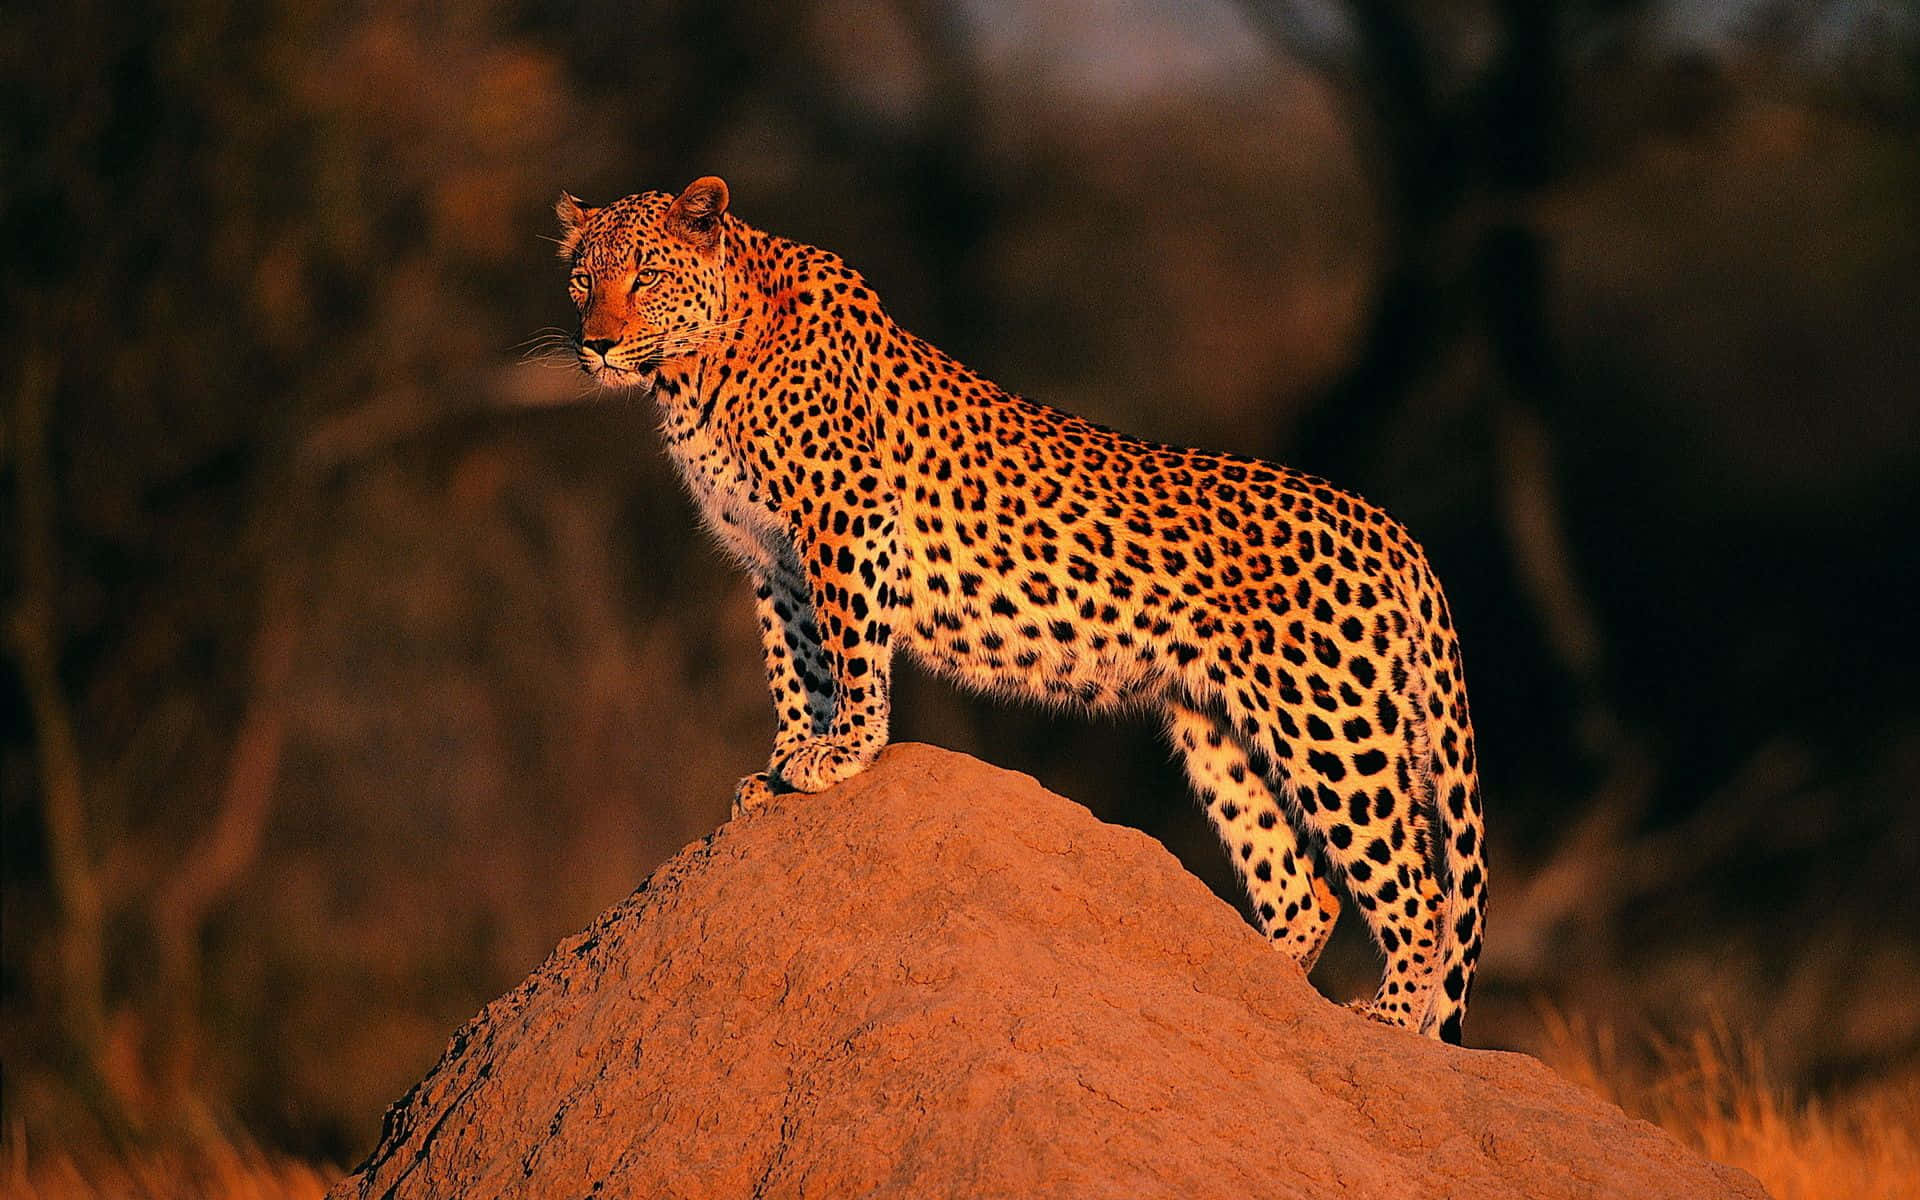 Enmajestætisk Leopard, Der Bader I Solen.